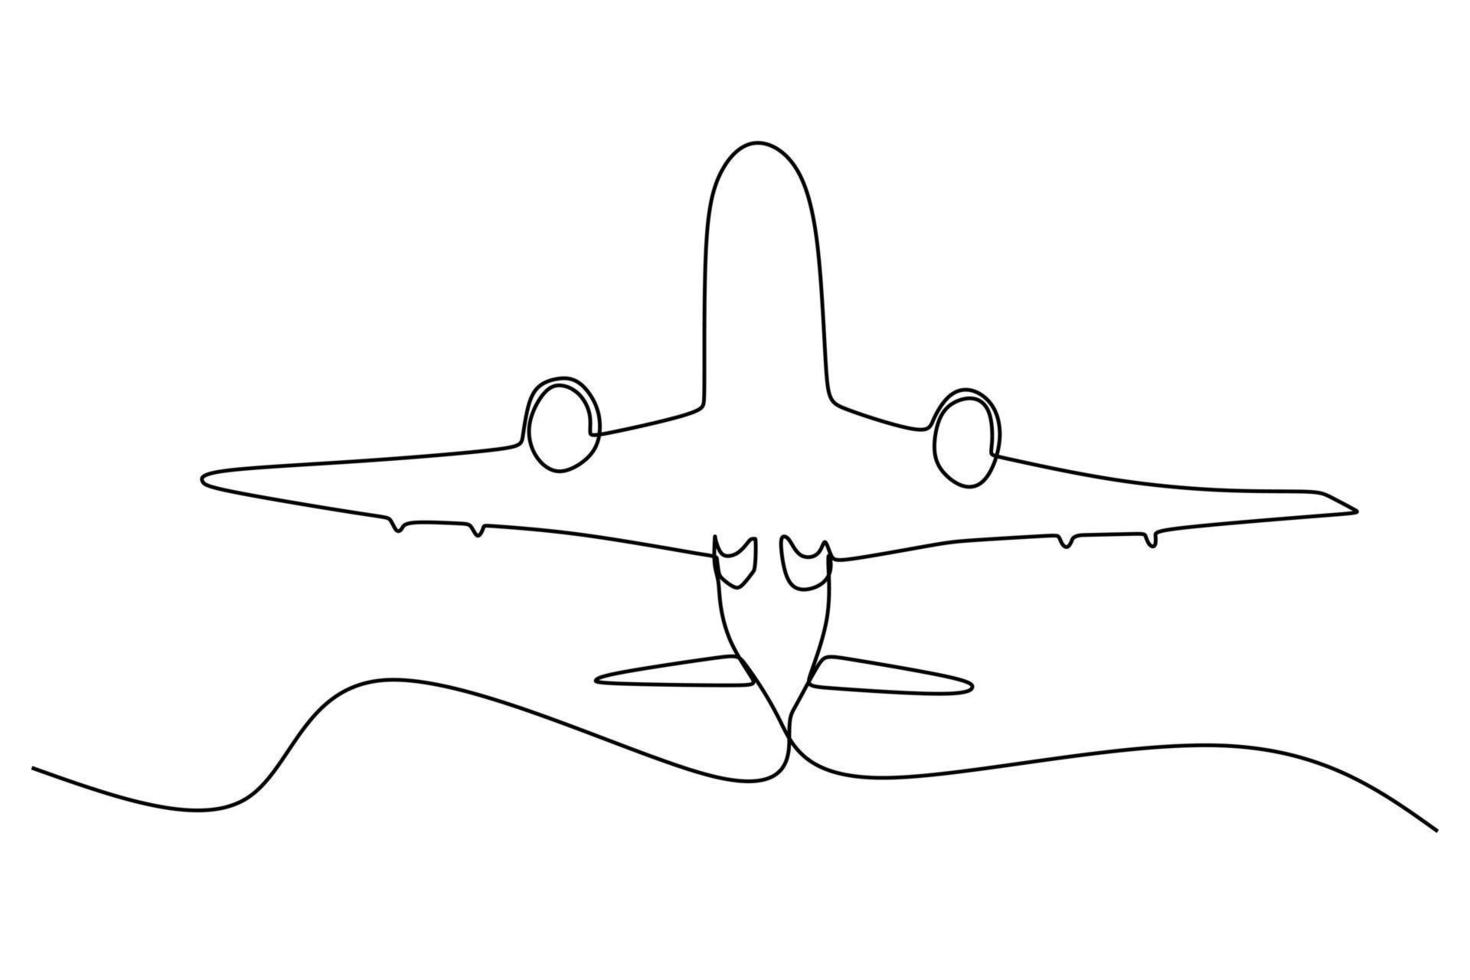 disegno a linea singola - decollo e salita dell'aeroplano commerciale. il decollo è la fase del volo in cui un veicolo aerospaziale lascia il suolo e diventa in volo. illustrazione vettoriale per il trasporto